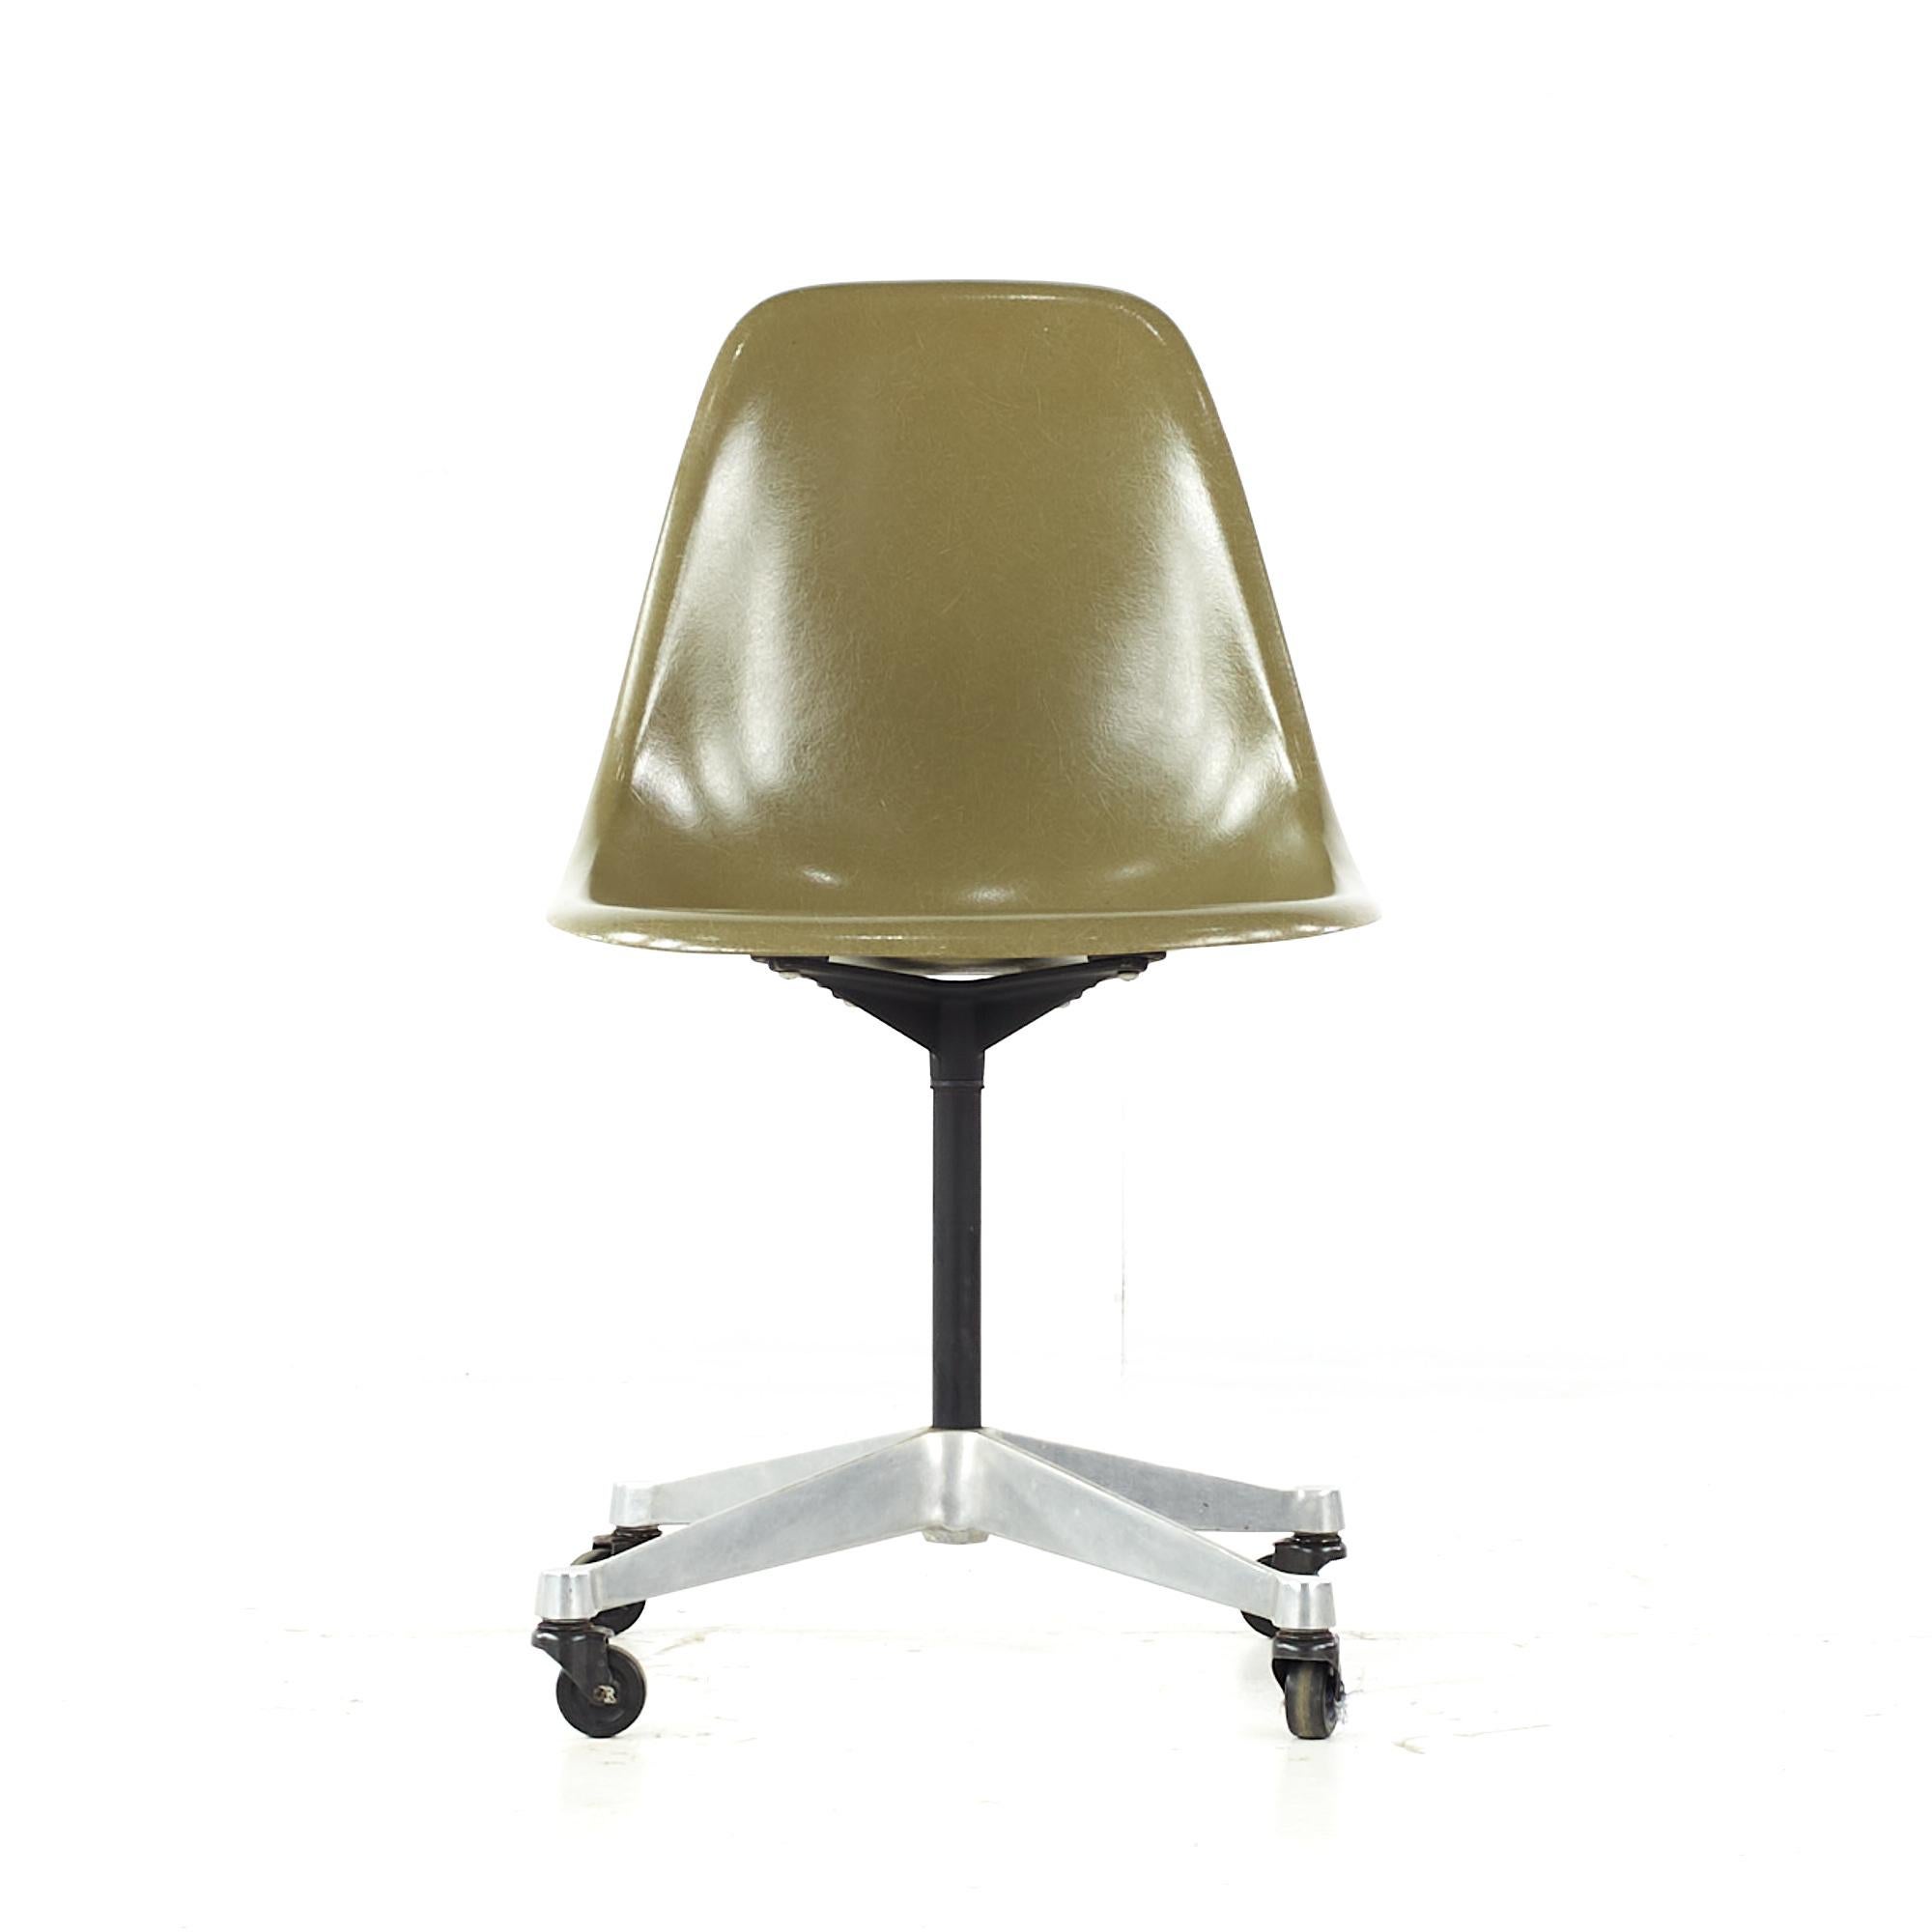 Charles et Ray Eames pour Herman Miller Chaise à roulettes Shell du milieu du siècle dernier

Cette chaise mesure : 18.5 de large x 24 de profond x 32 de haut, avec une hauteur d'assise de 17.5 pouces.

Tous les meubles peuvent être achetés dans ce